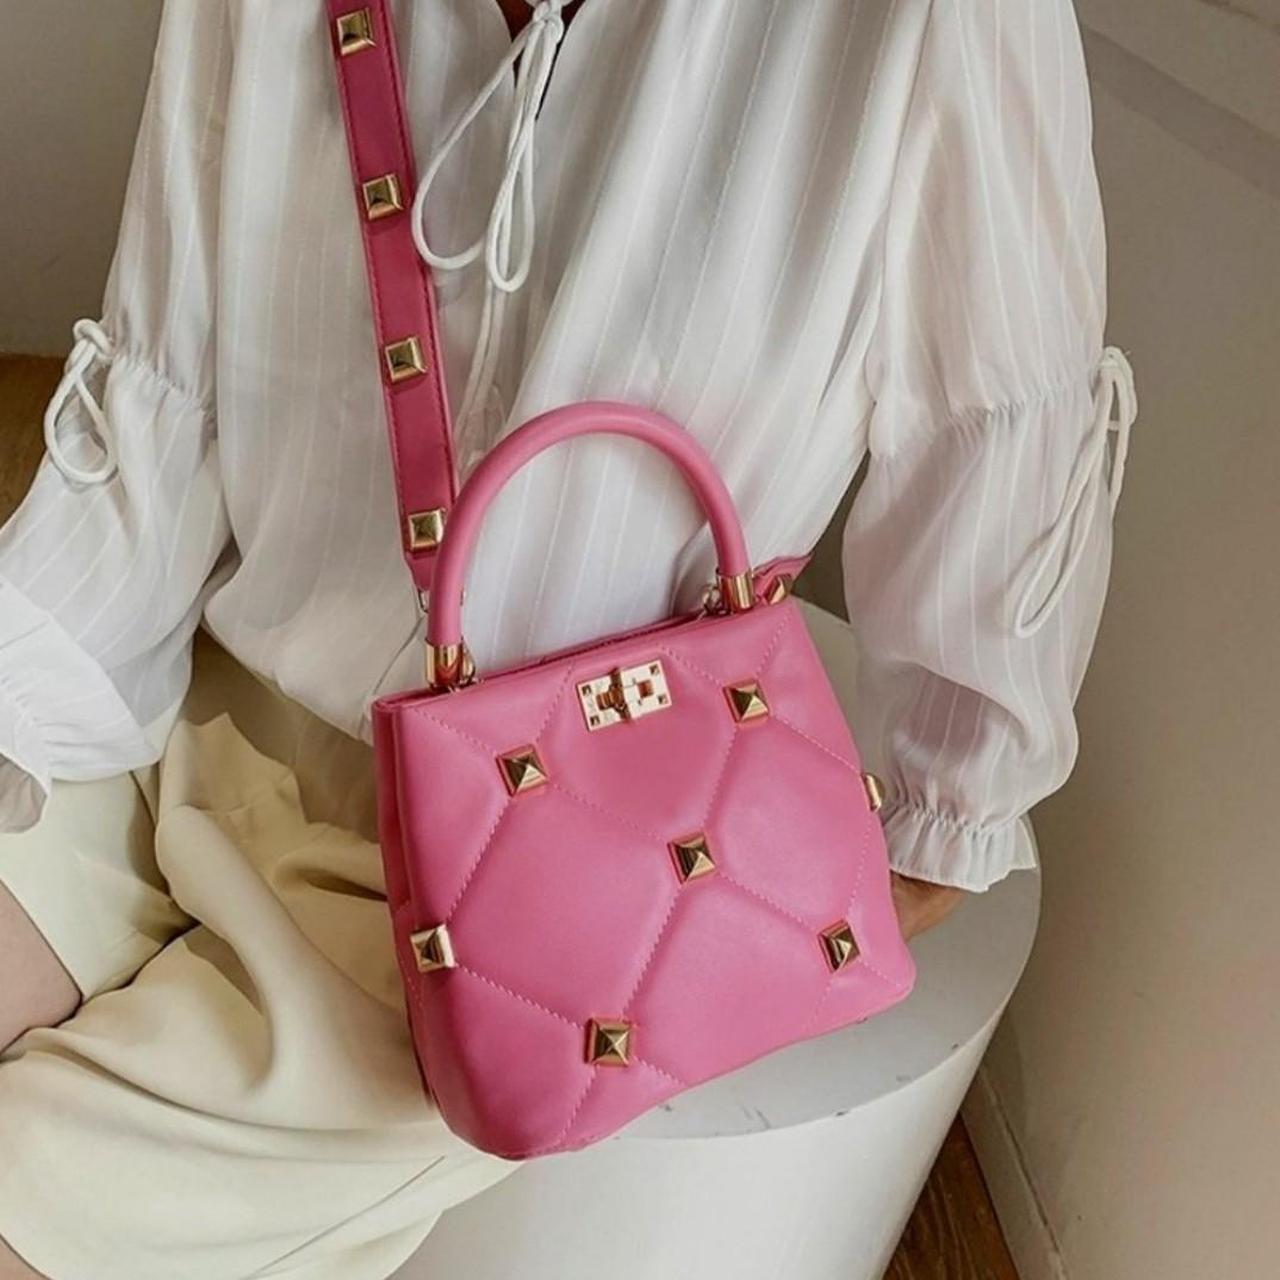 Pink Designer Studded Top Handle Bag with Removable... - Depop